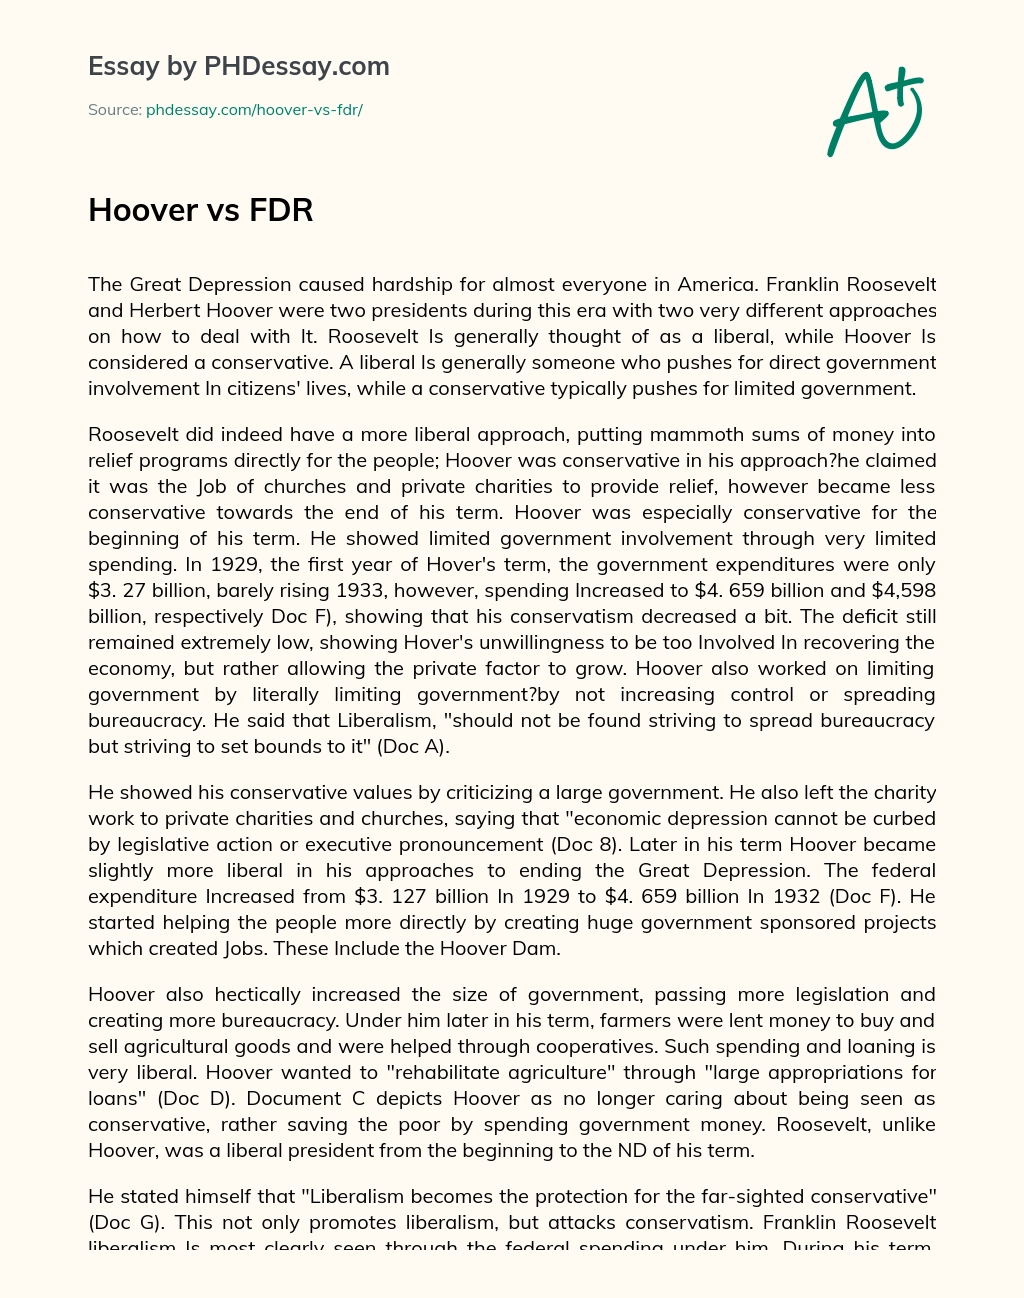 Hoover vs FDR essay